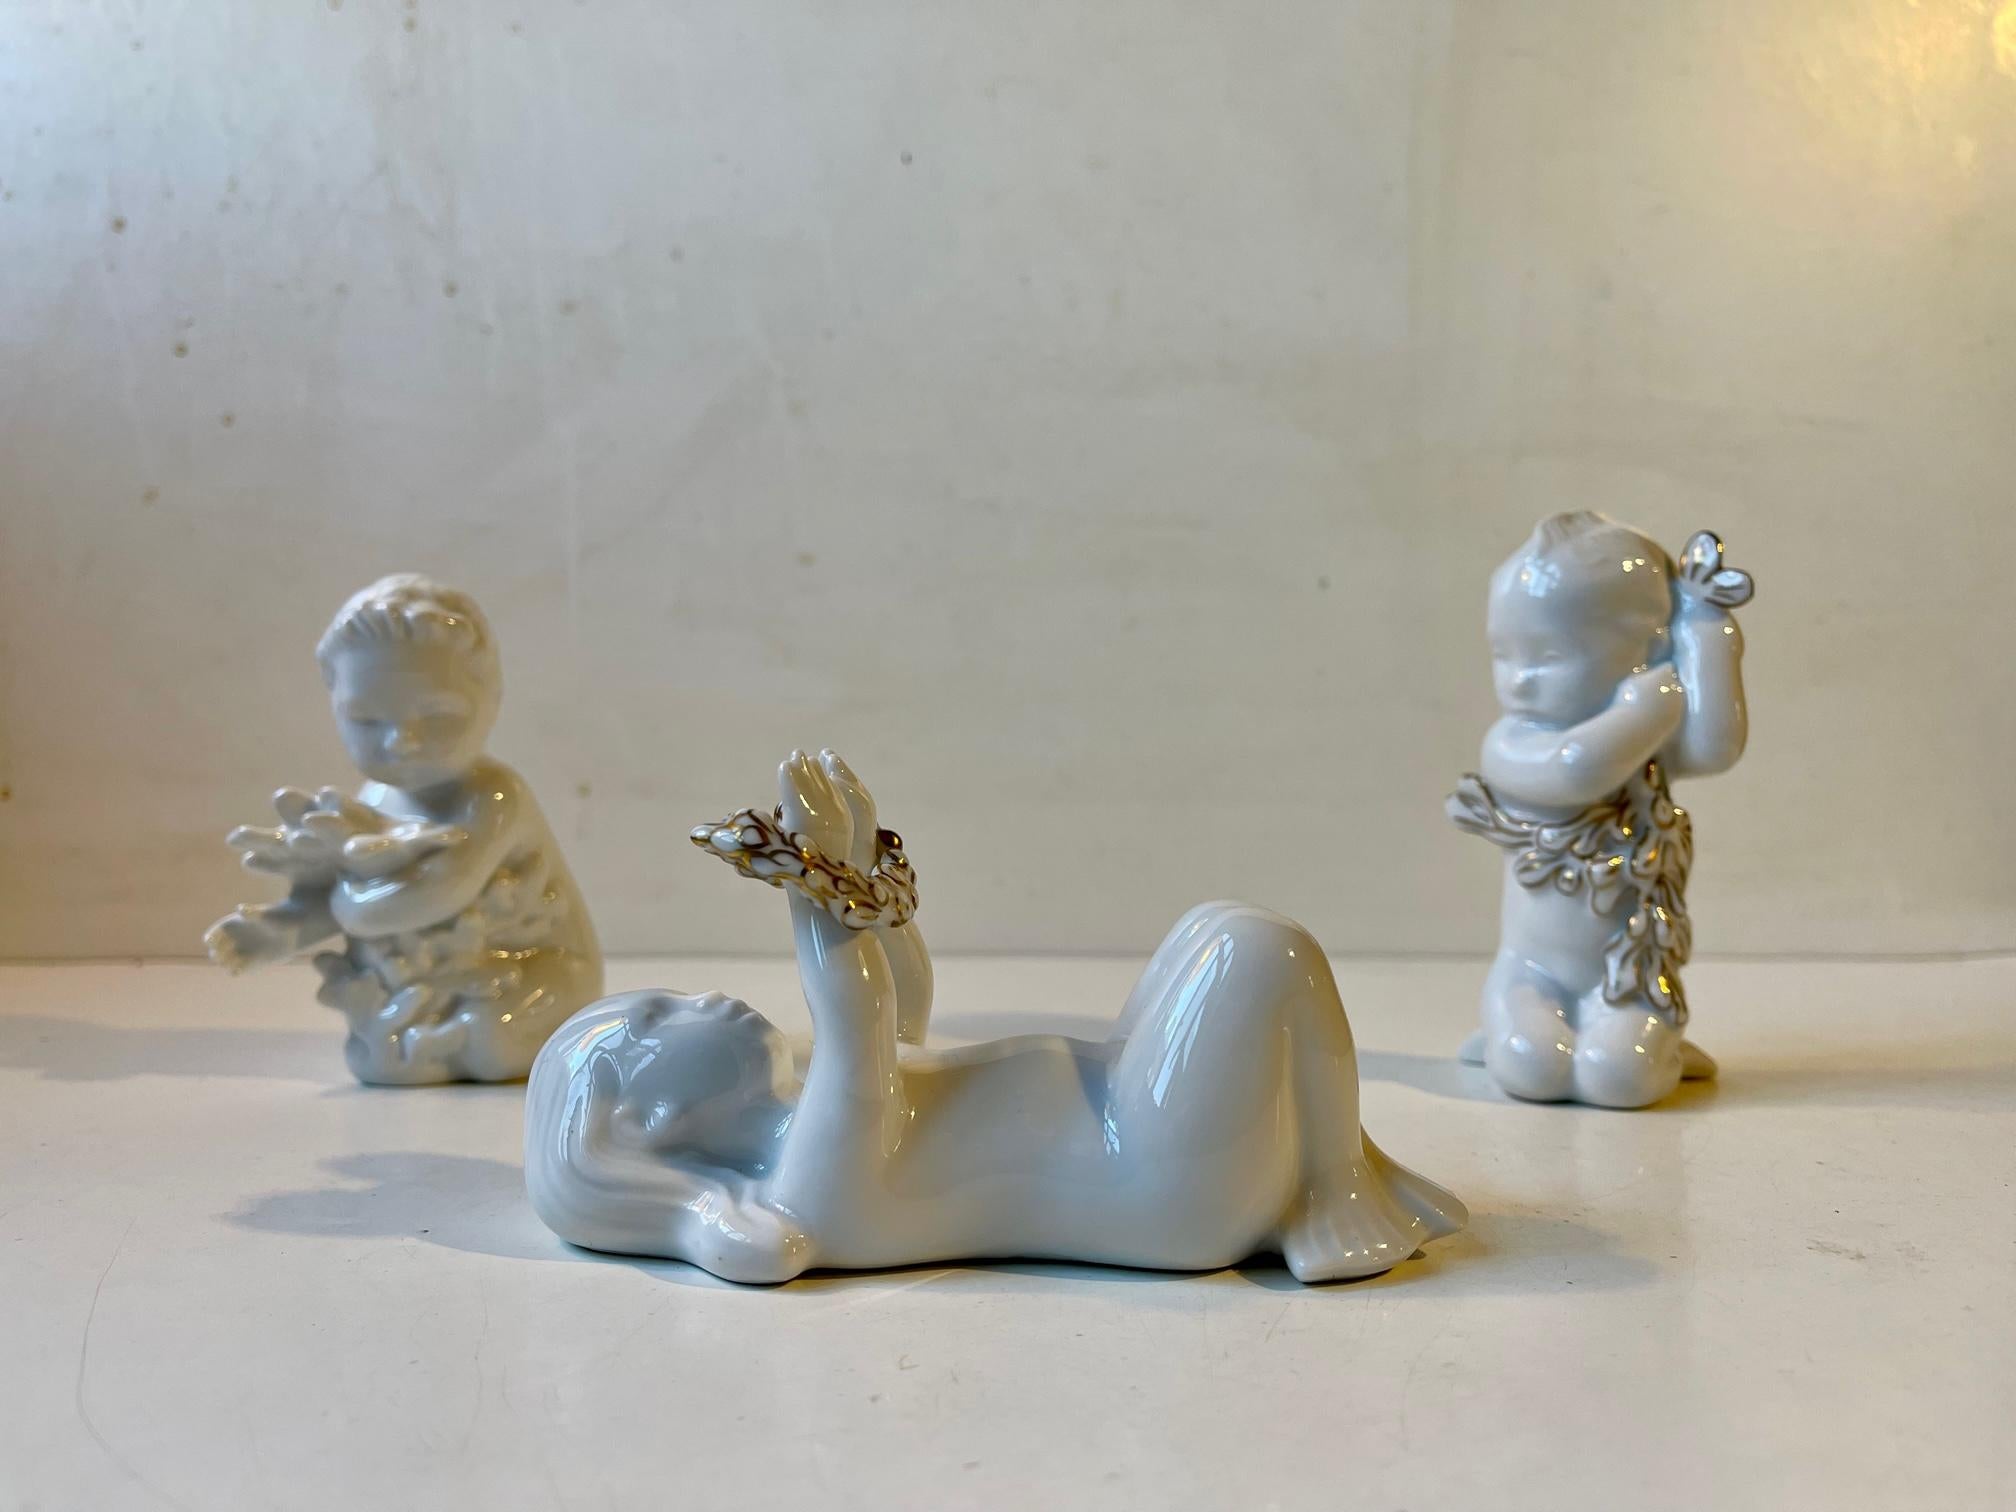 Eine Gruppe von Blanc de chine-Porzellanfiguren, von denen zwei mit Goldglasur dekorierte Sondereditionen sind. Man nennt sie Ozean-Kinder und hält sie für die Nachkommen von Meerjungfrauen. Entworfen von Ebbe Sadolin und Svend Jespersen und